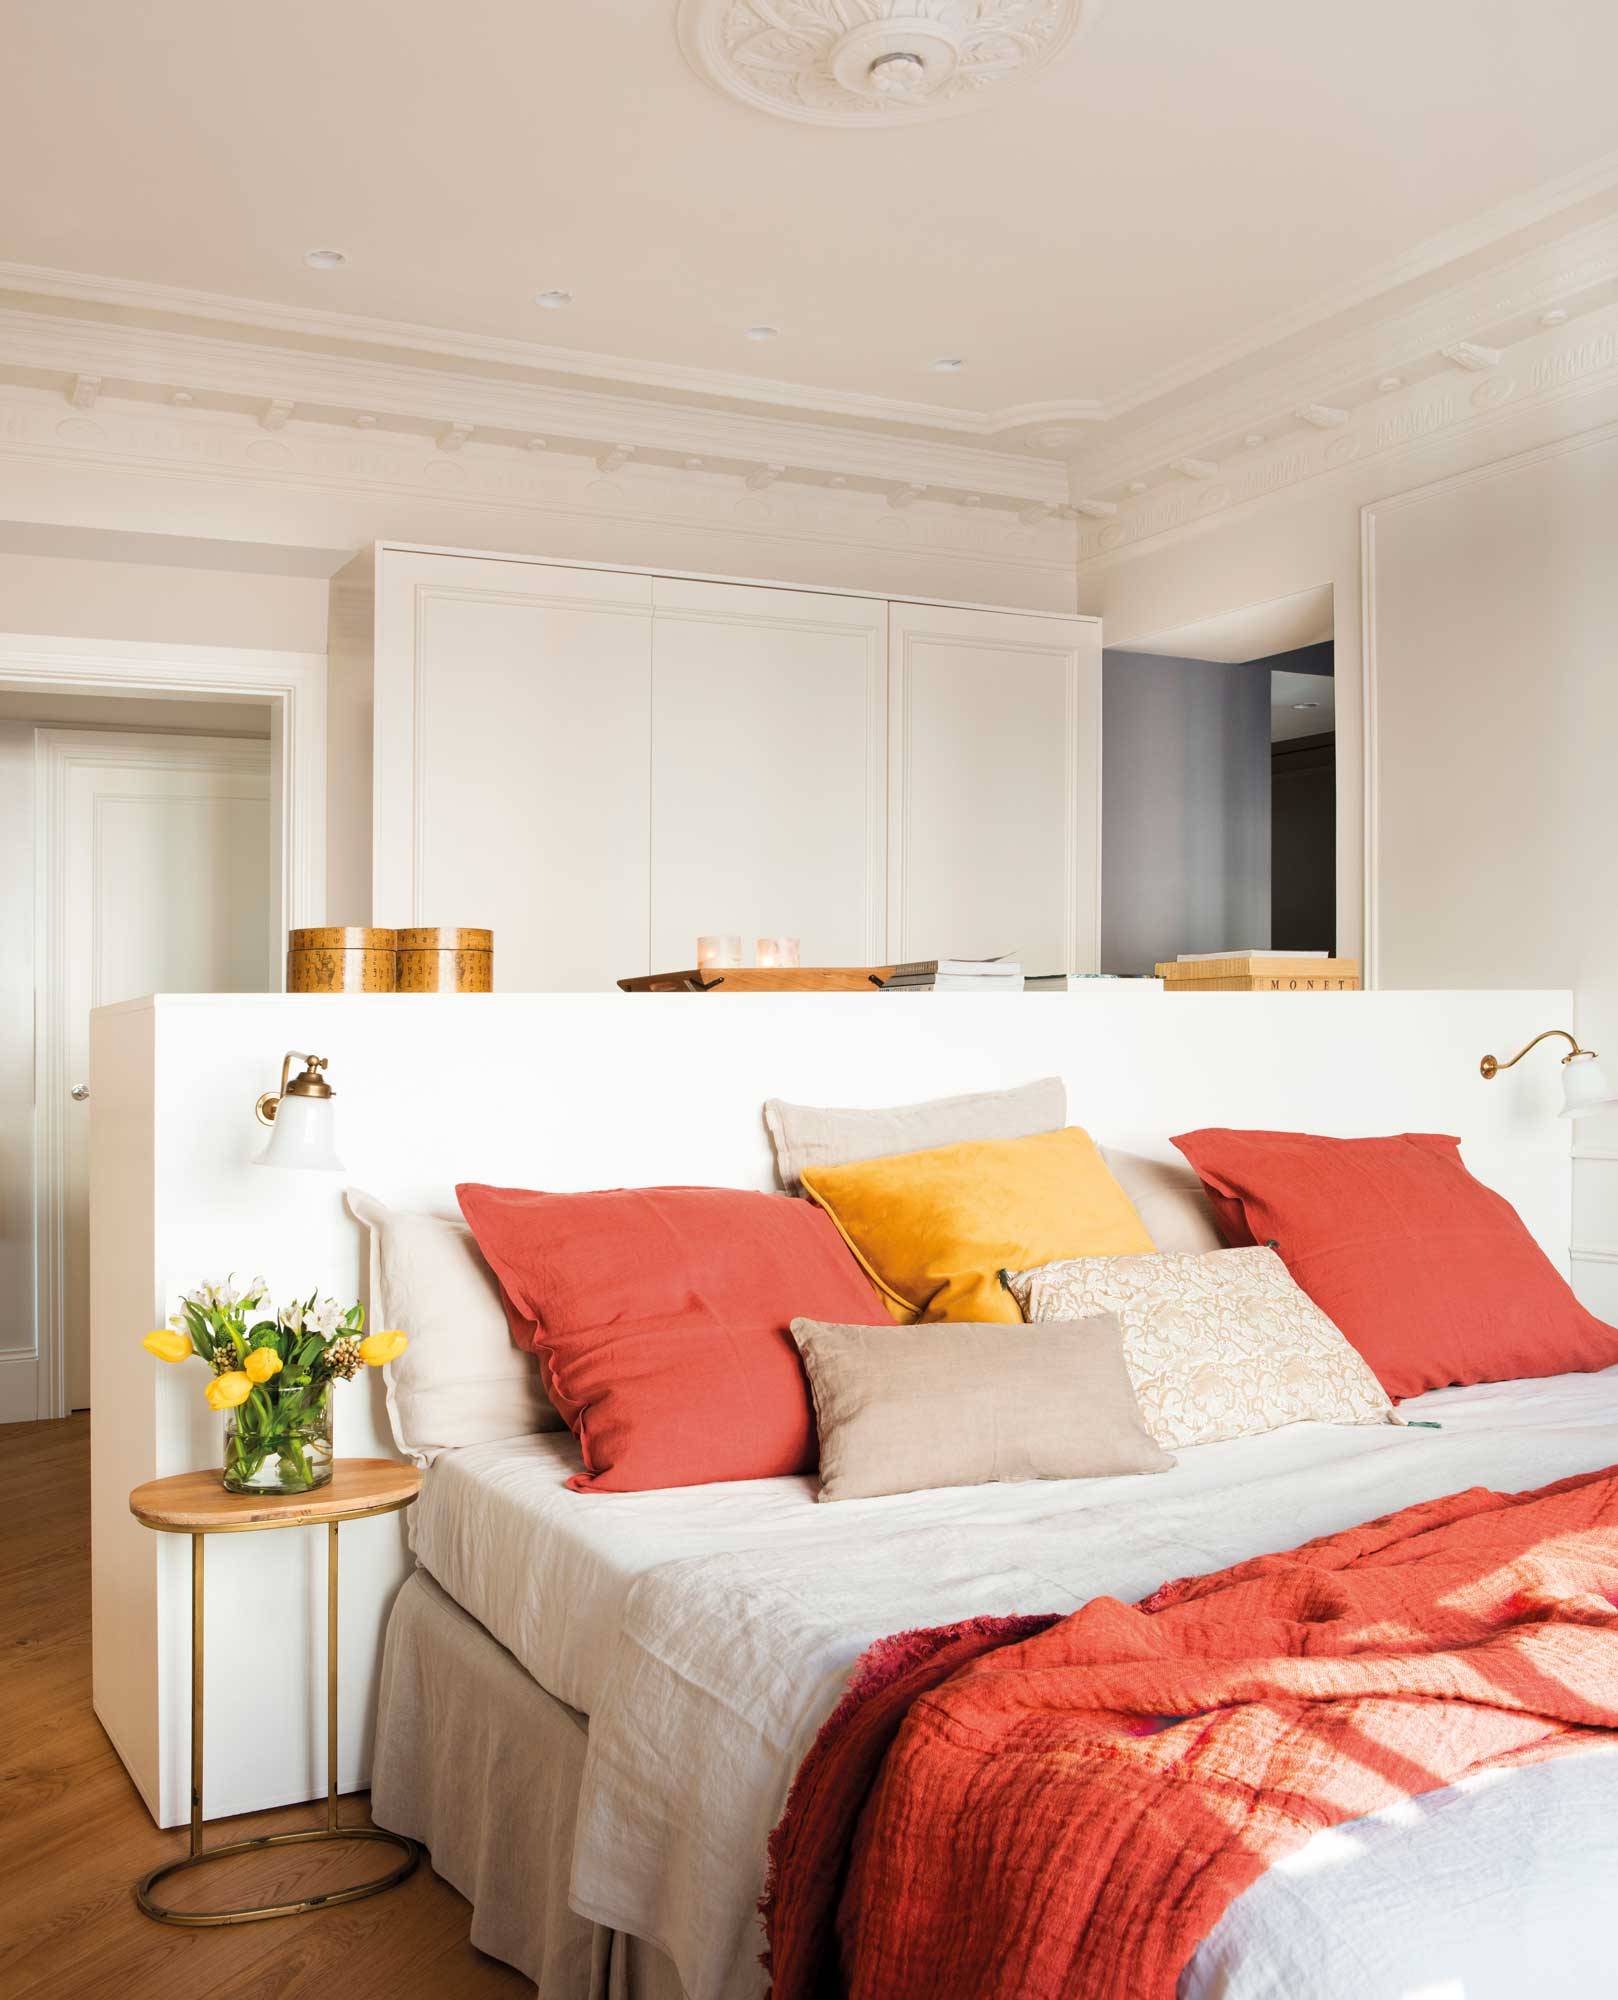 Dormitorio moderno con molduras clásicas y cabecero separando la zona de vestidor.